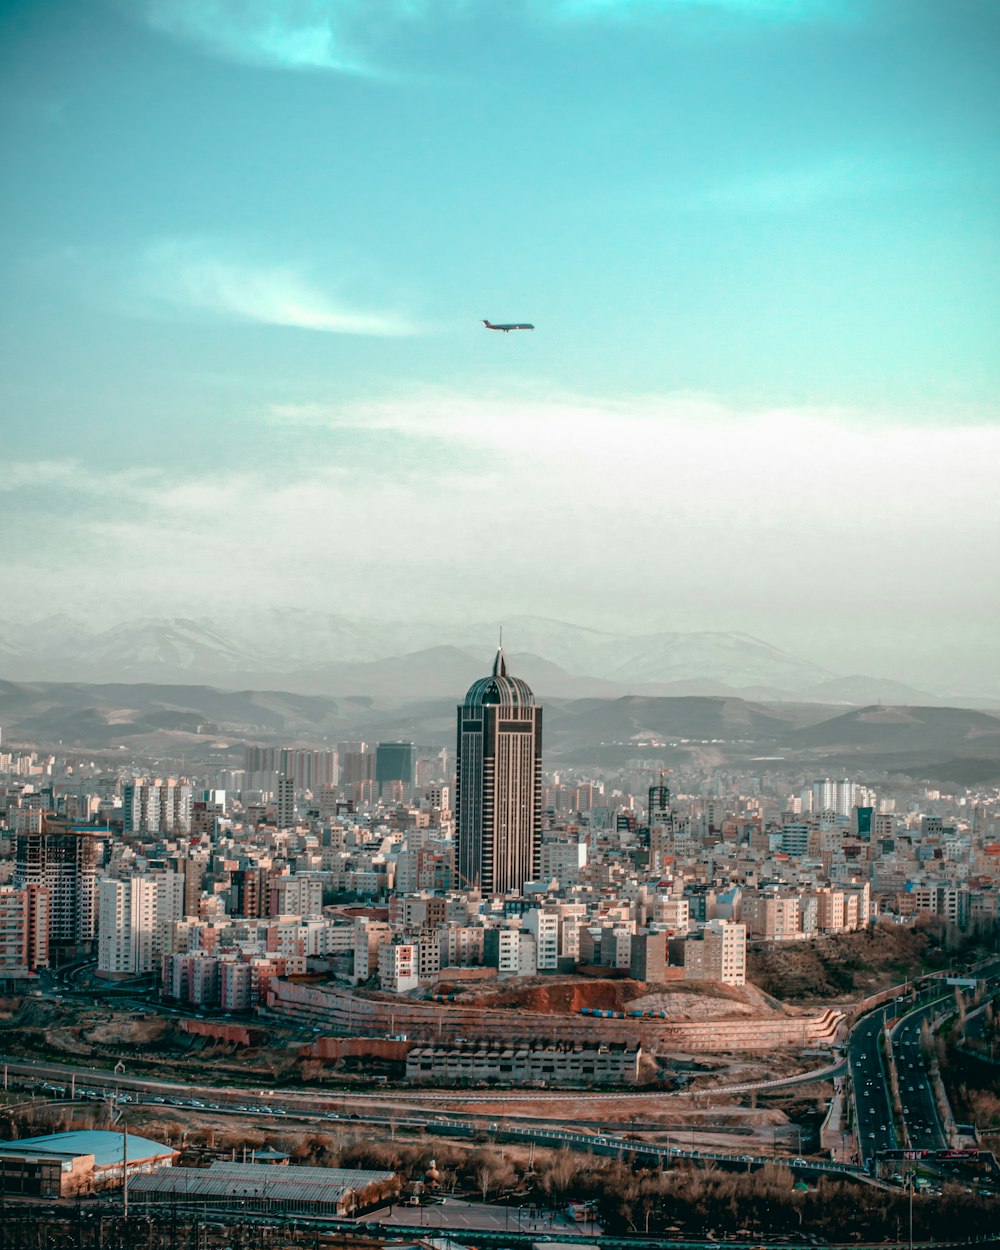 Ein Flugzeug fliegt über eine Stadt mit hohen Gebäuden